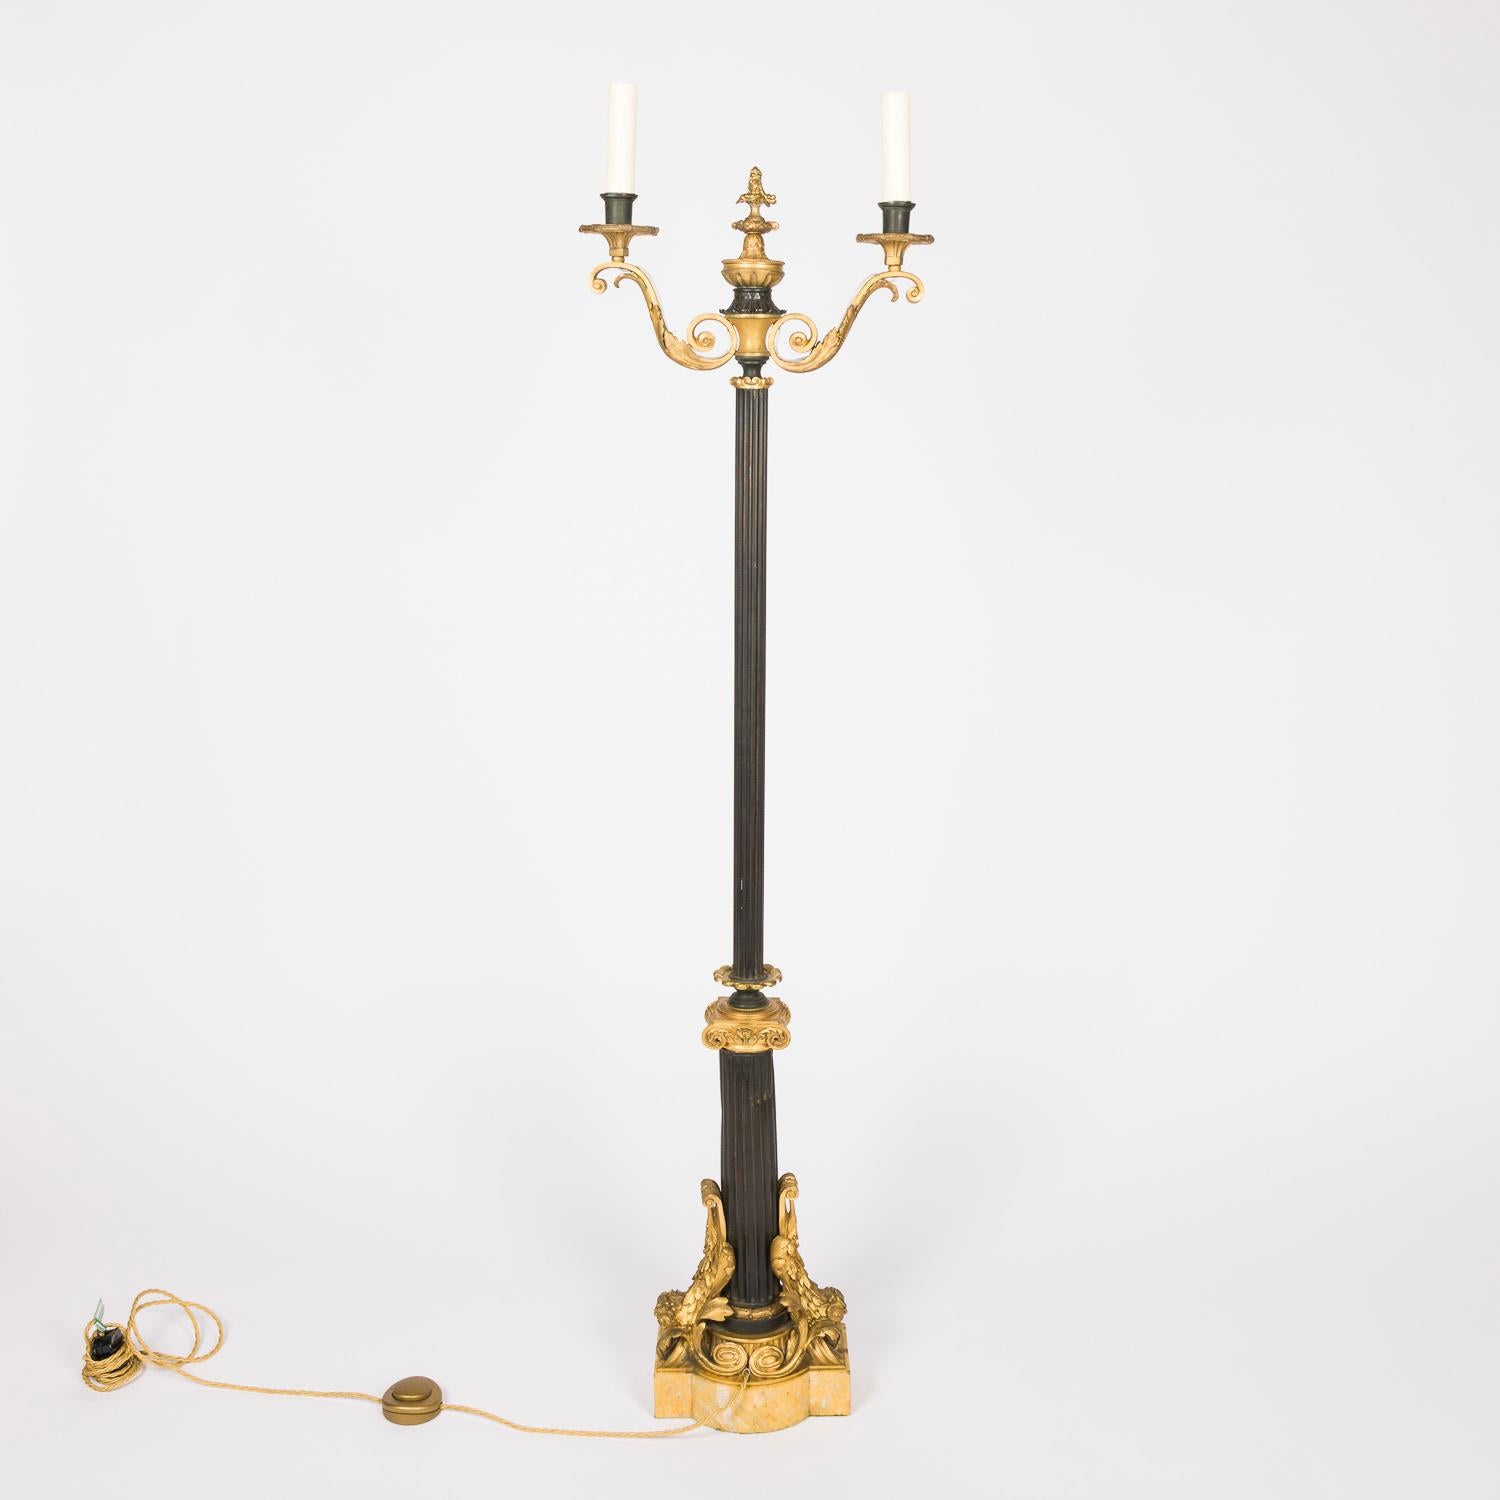 Französische Stehlampe im neoklassizistischen Stil aus vergoldeter Bronze, Tôle und Siena-Marmor mit zwei Armen.

Gewogener Marmorsockel.

Neu verkabelt und getestet.